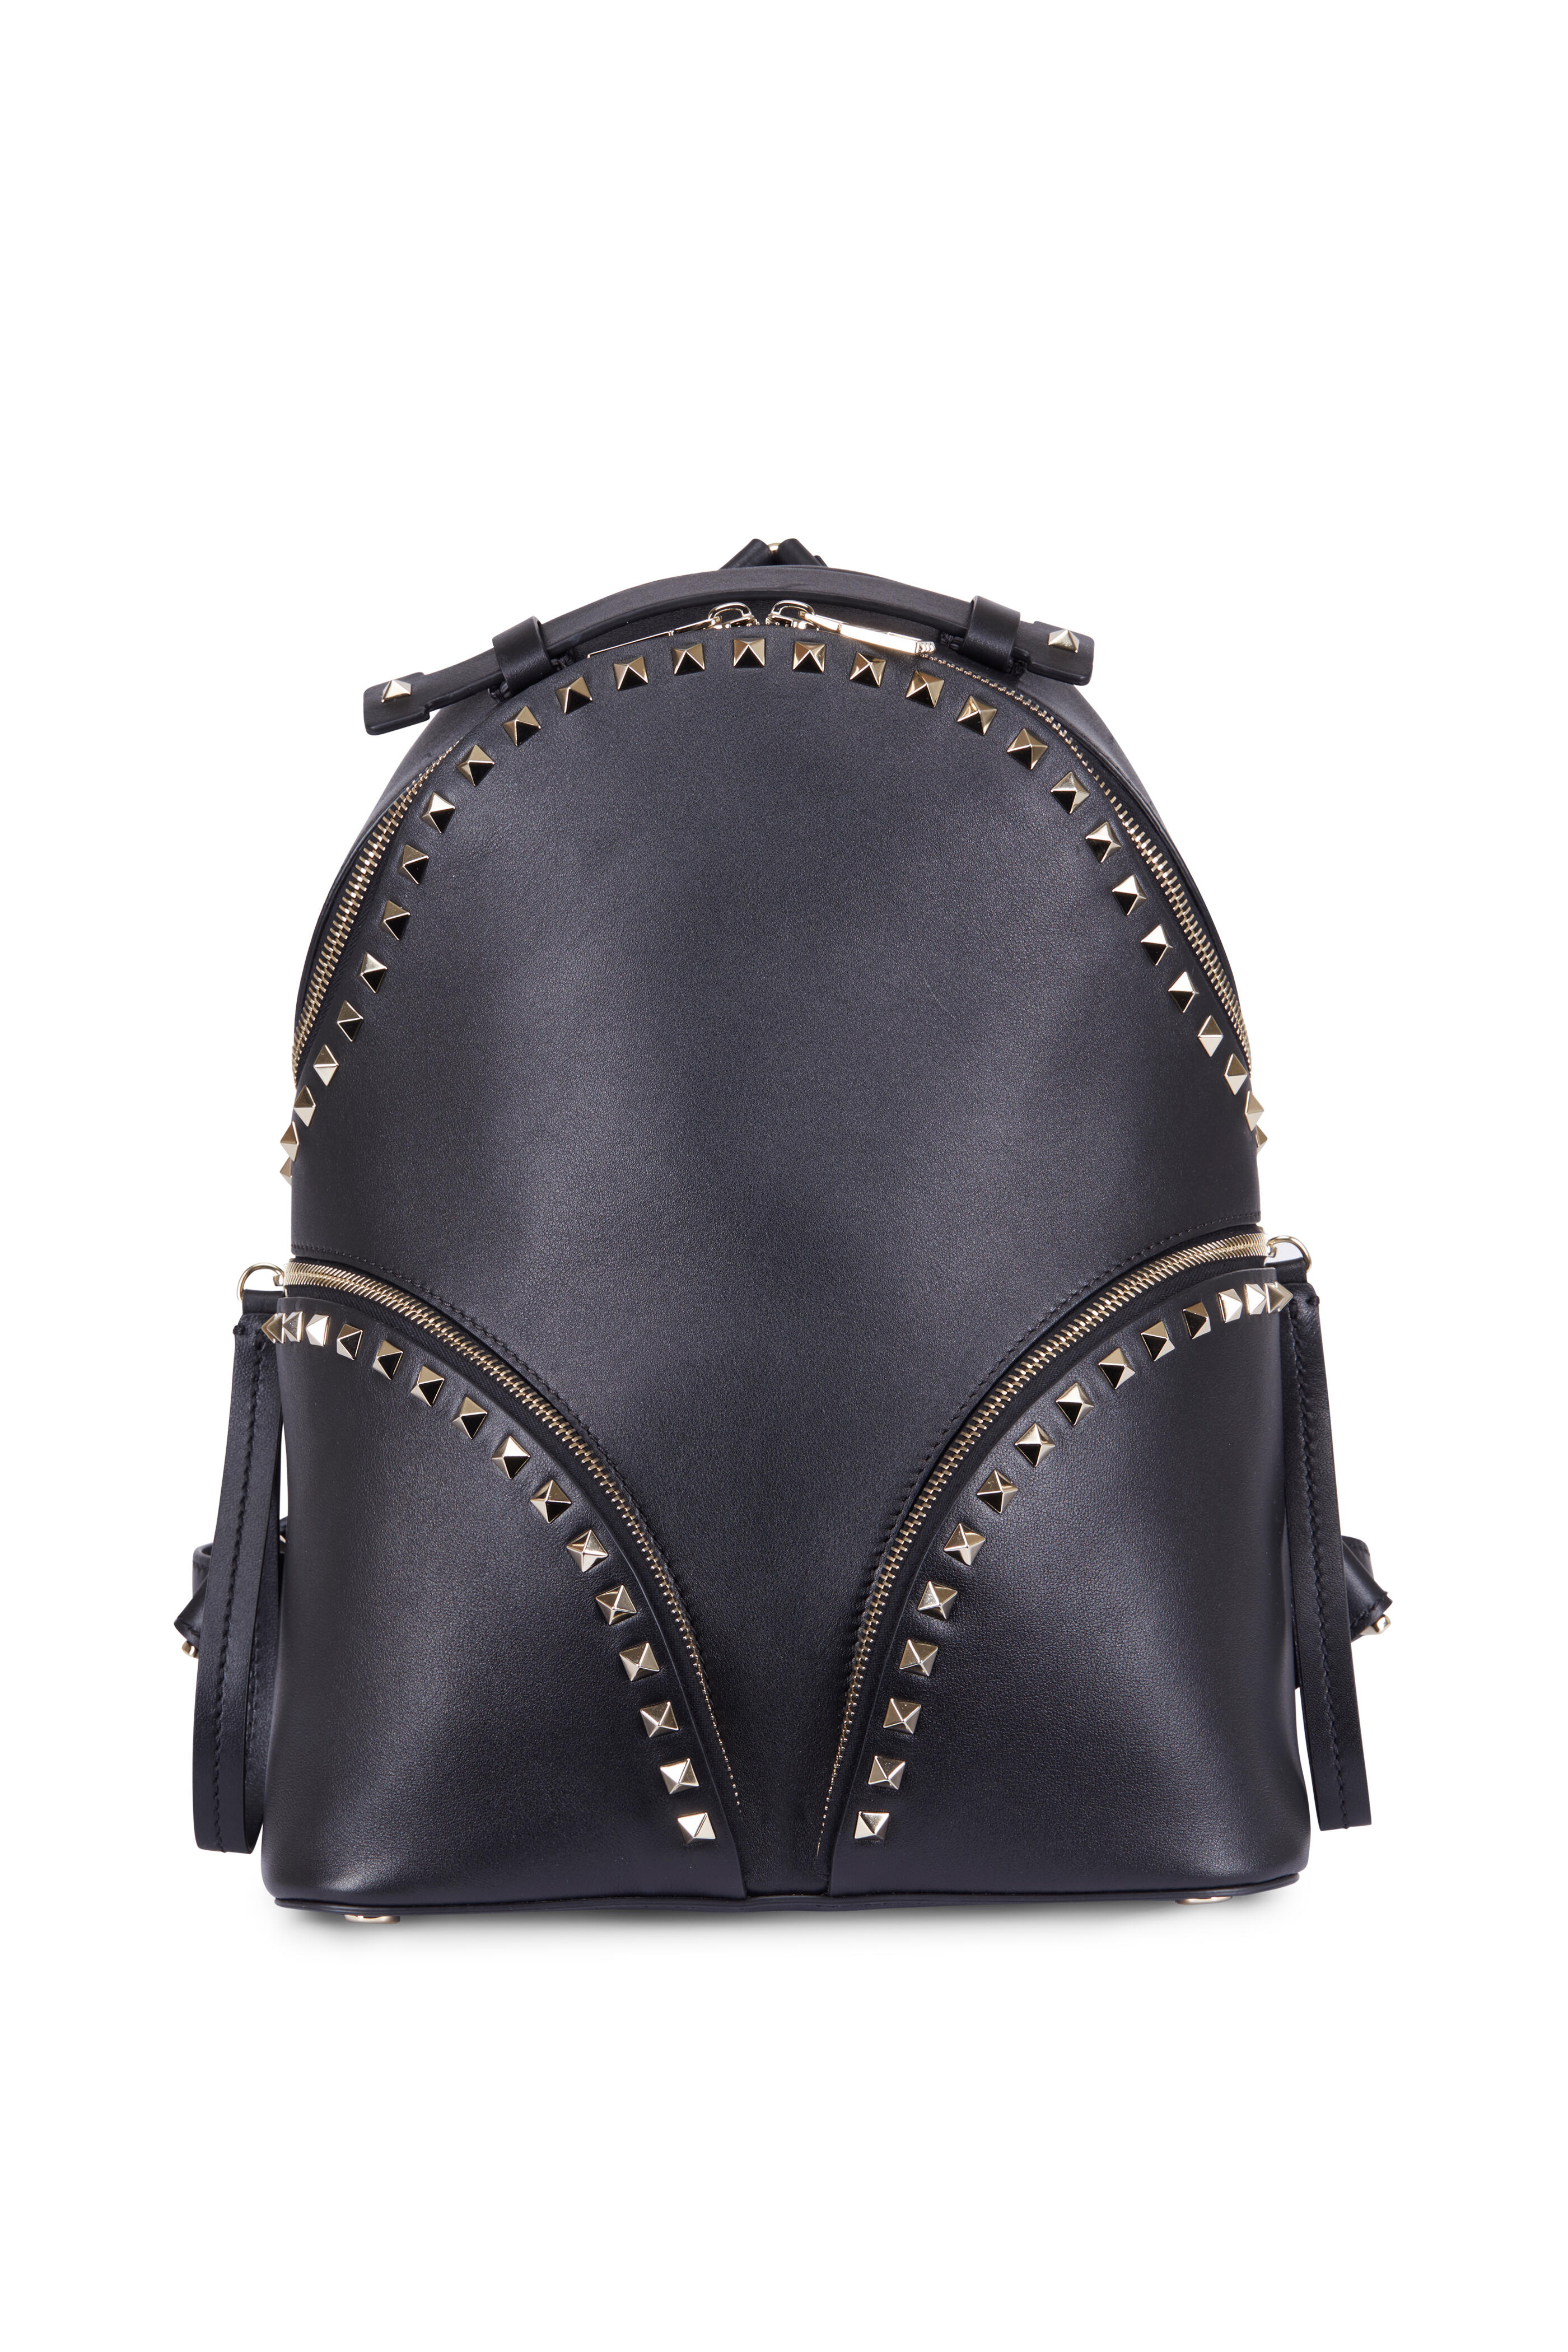 Rodet gravid Uventet Valentino Garavani - Rockstud Black Smooth Leather Backpack